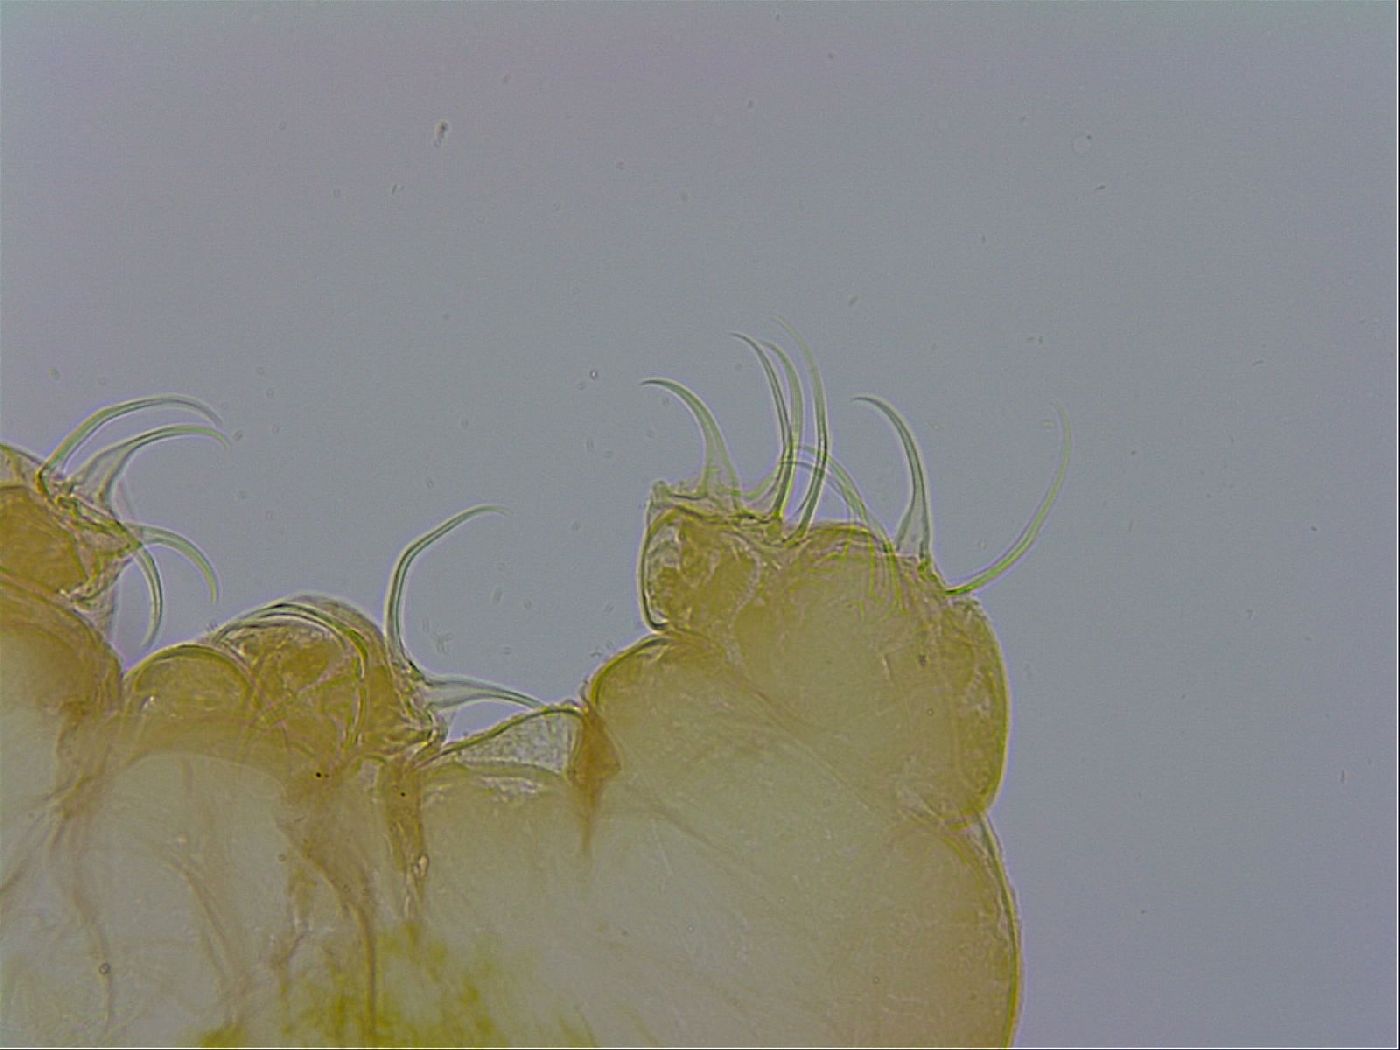 Pseudobiotus megalonyx image